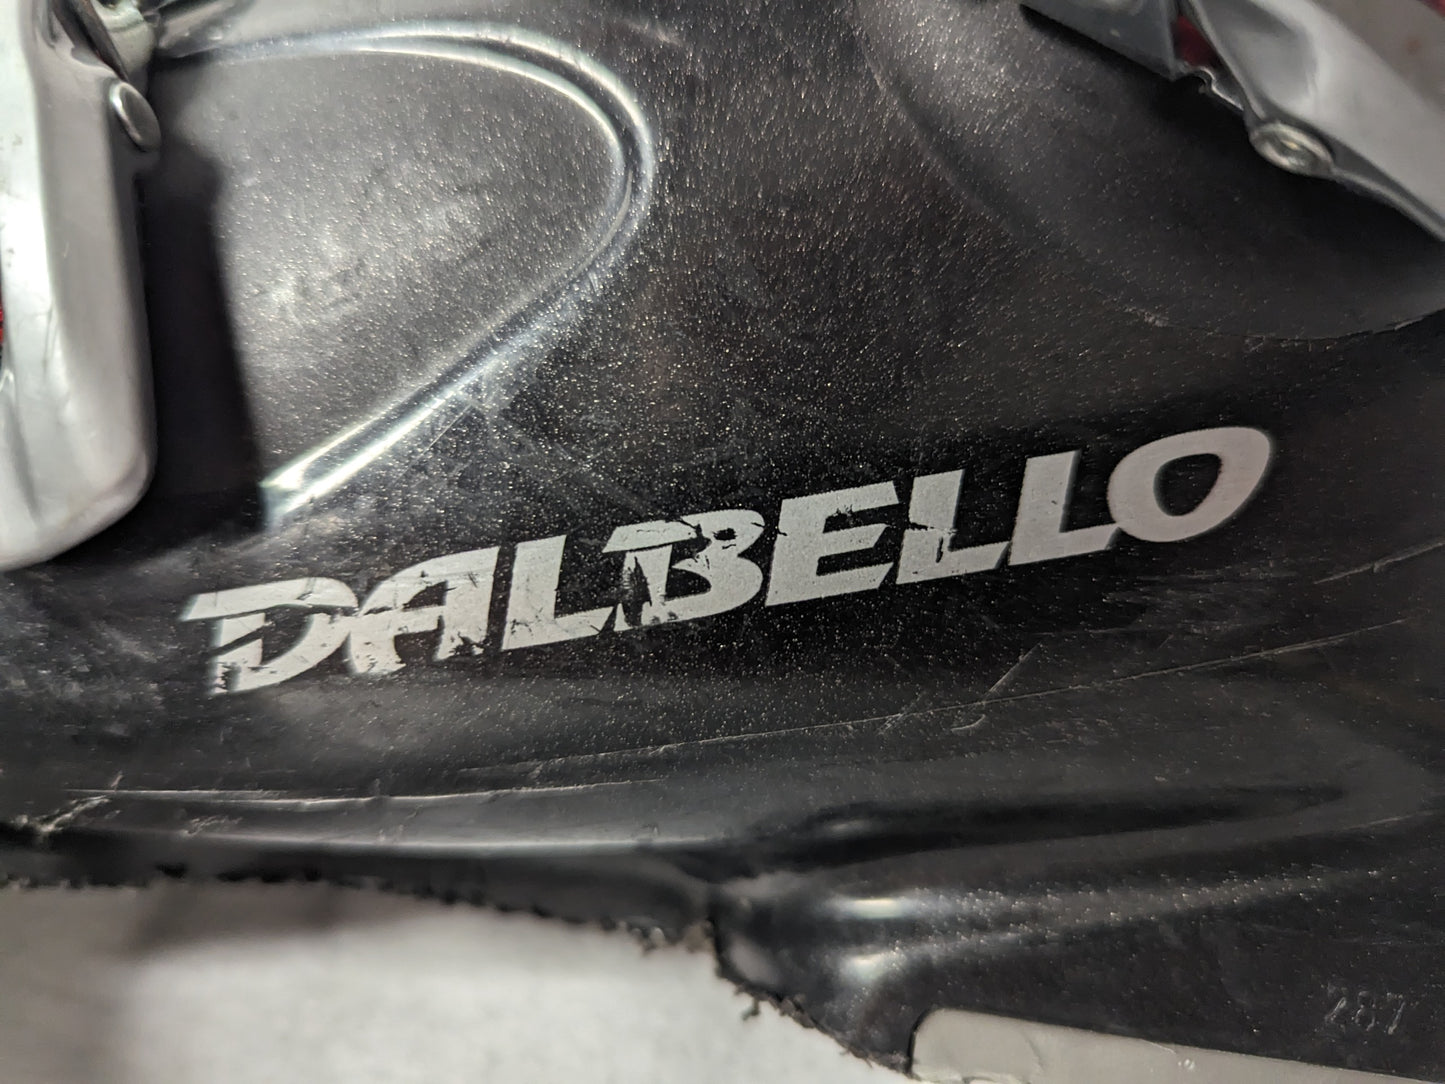 Dalbello CX Equipe 3 Ski Boots Size 23.5 Color Black Condition Used